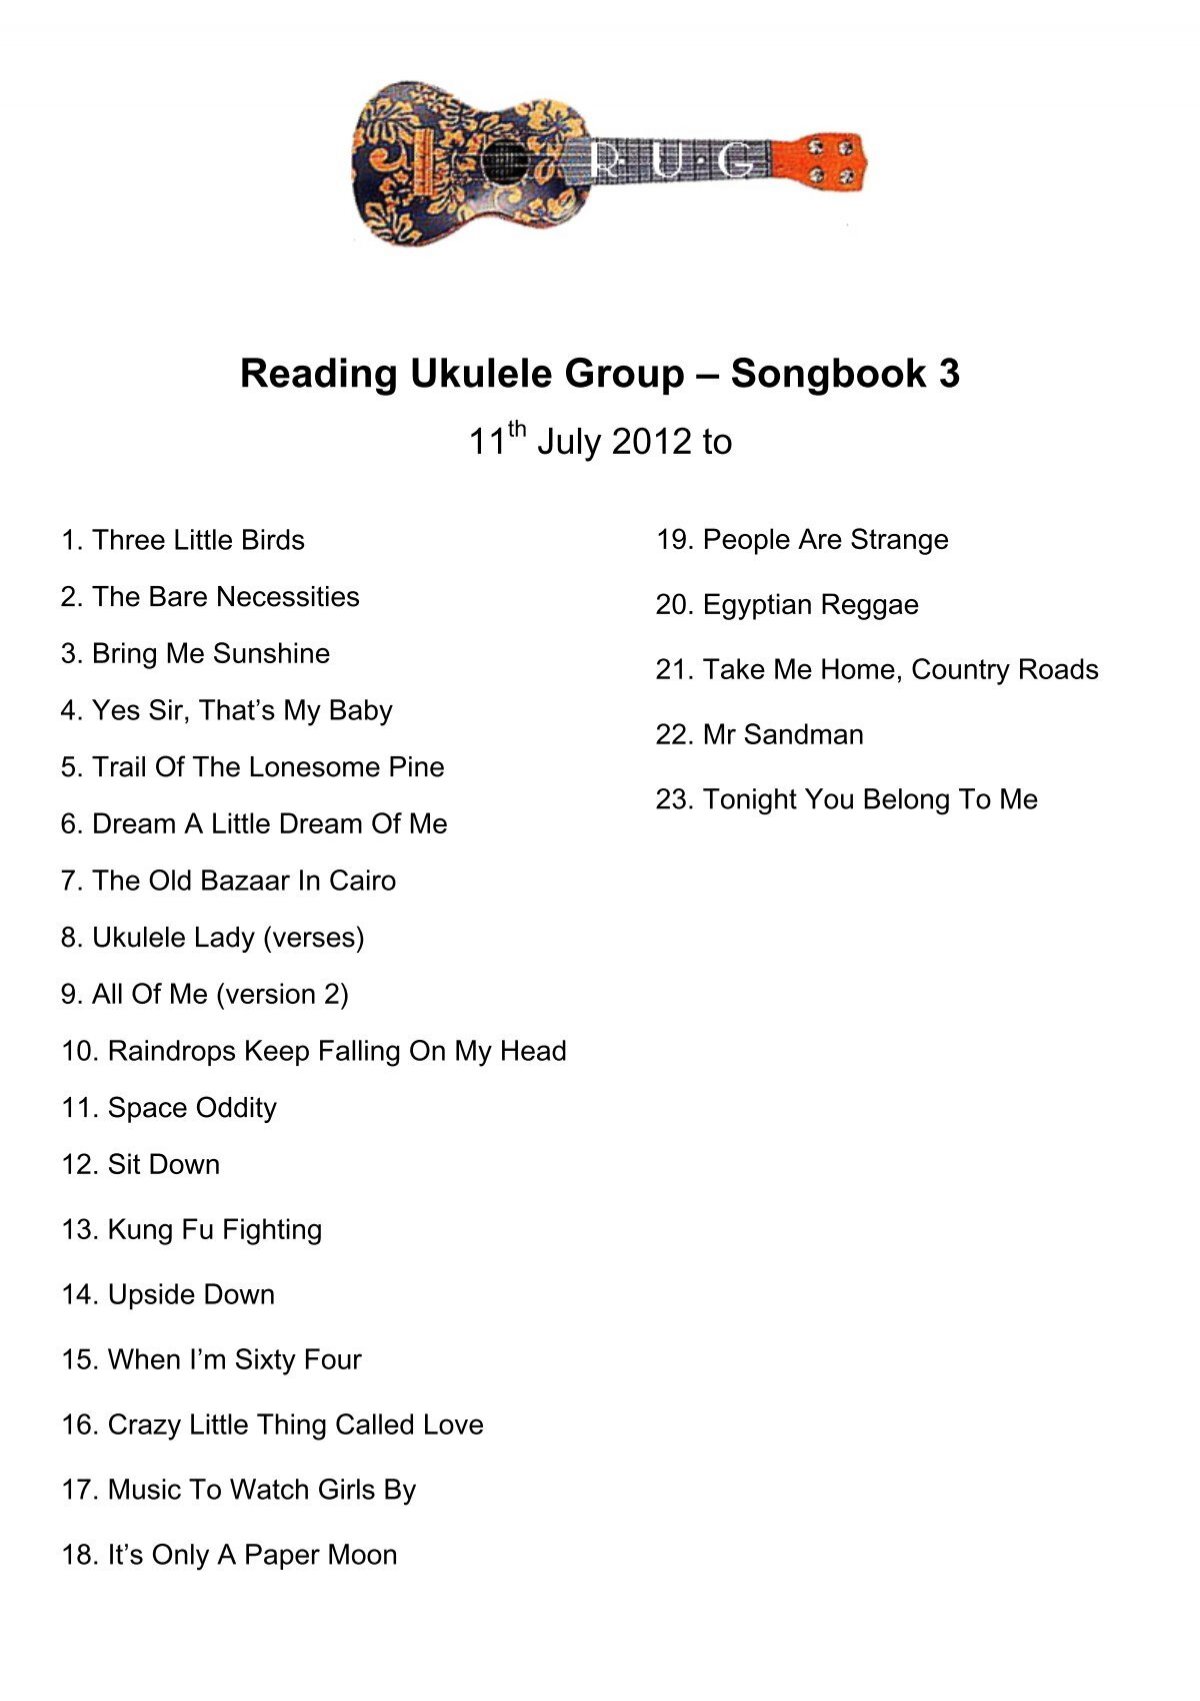 Songbook 3 Reading Ukulele Group